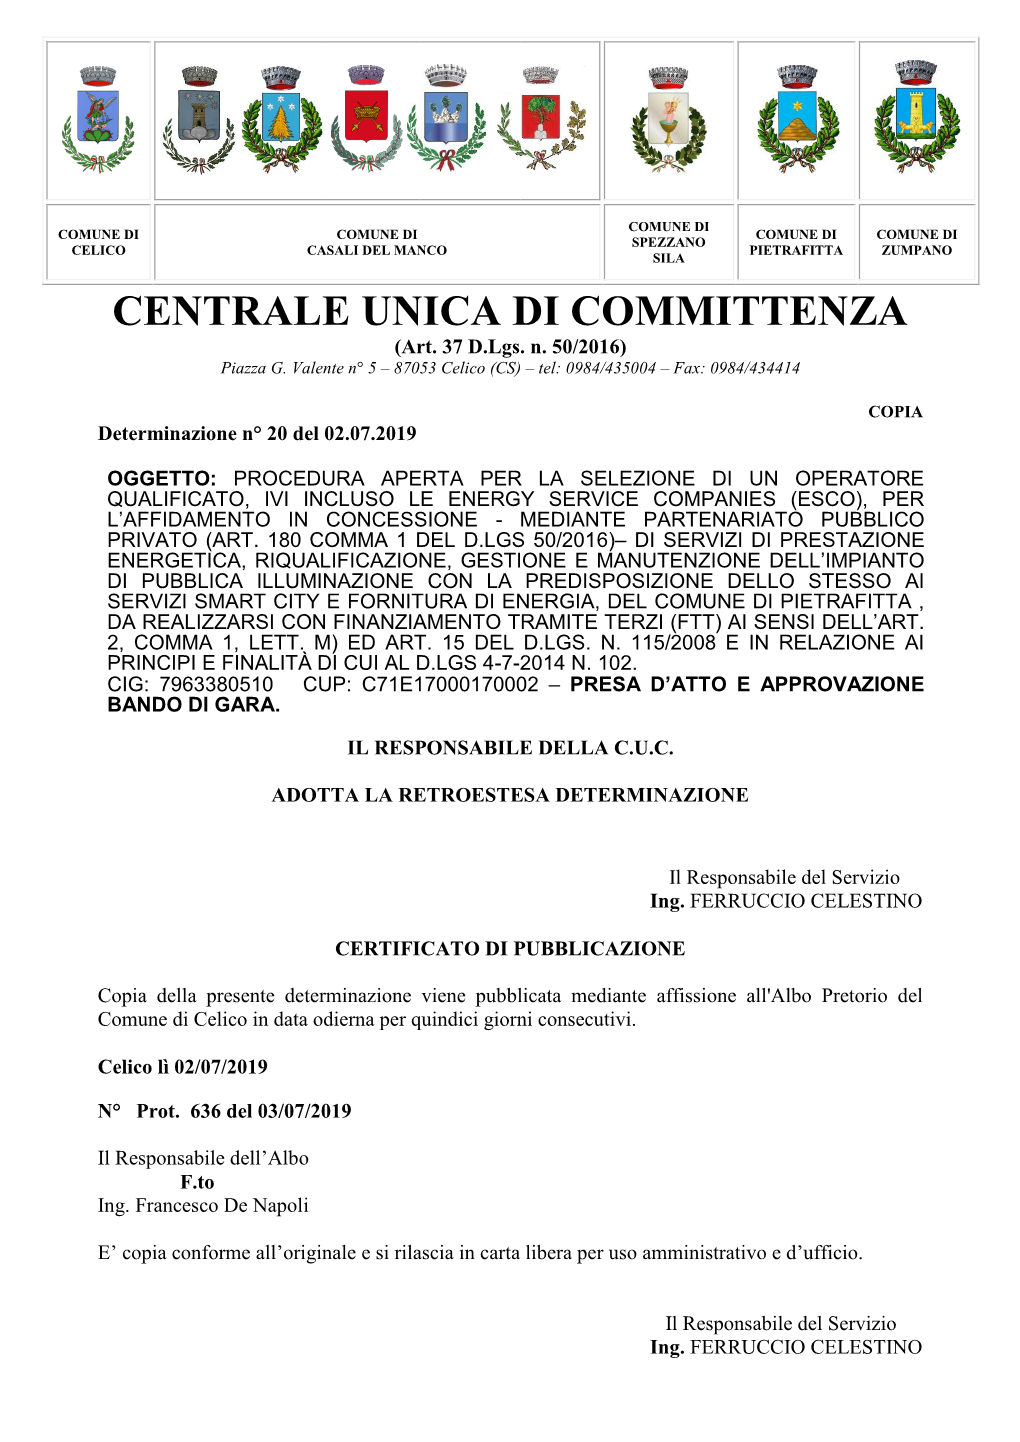 CENTRALE UNICA DI COMMITTENZA (Art